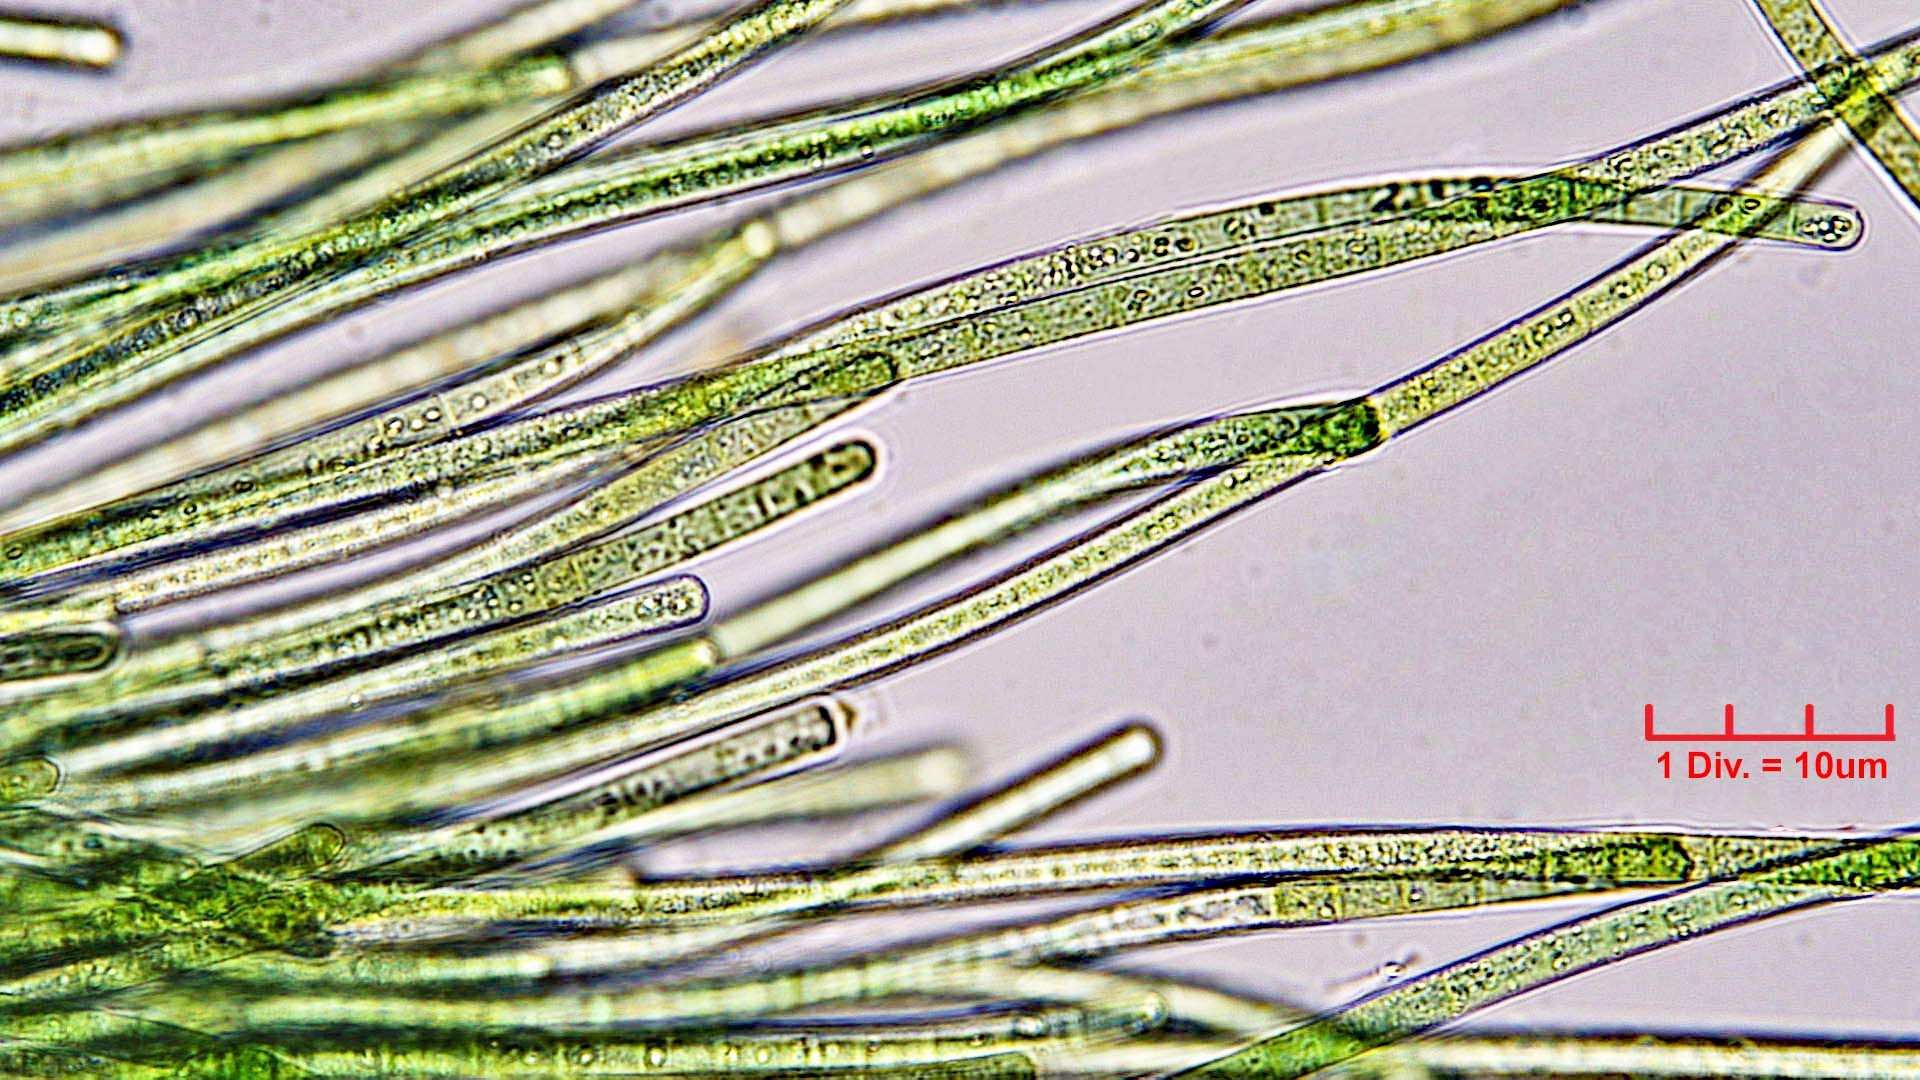 Cyanobacteria/Oscillatoriales/Oscillatoriaceae/Phormidium/retzii/phormidium-retzii-231.jpg